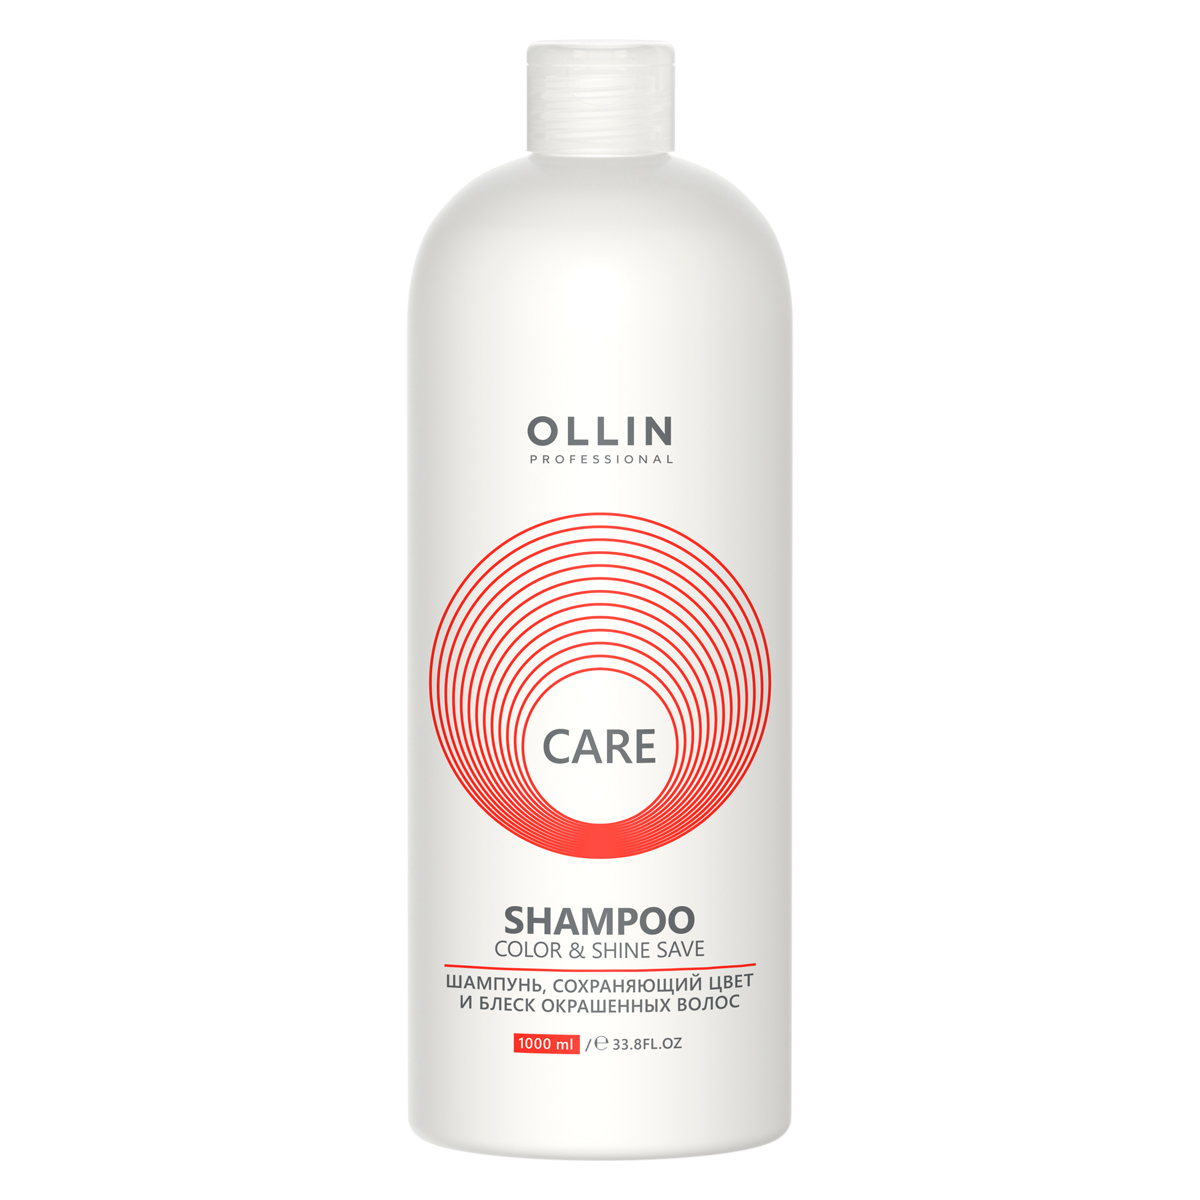 Ollin Professional Шампунь, сохраняющий цвет и блеск окрашенных волос, 1000 мл (Ollin Professional, Care)